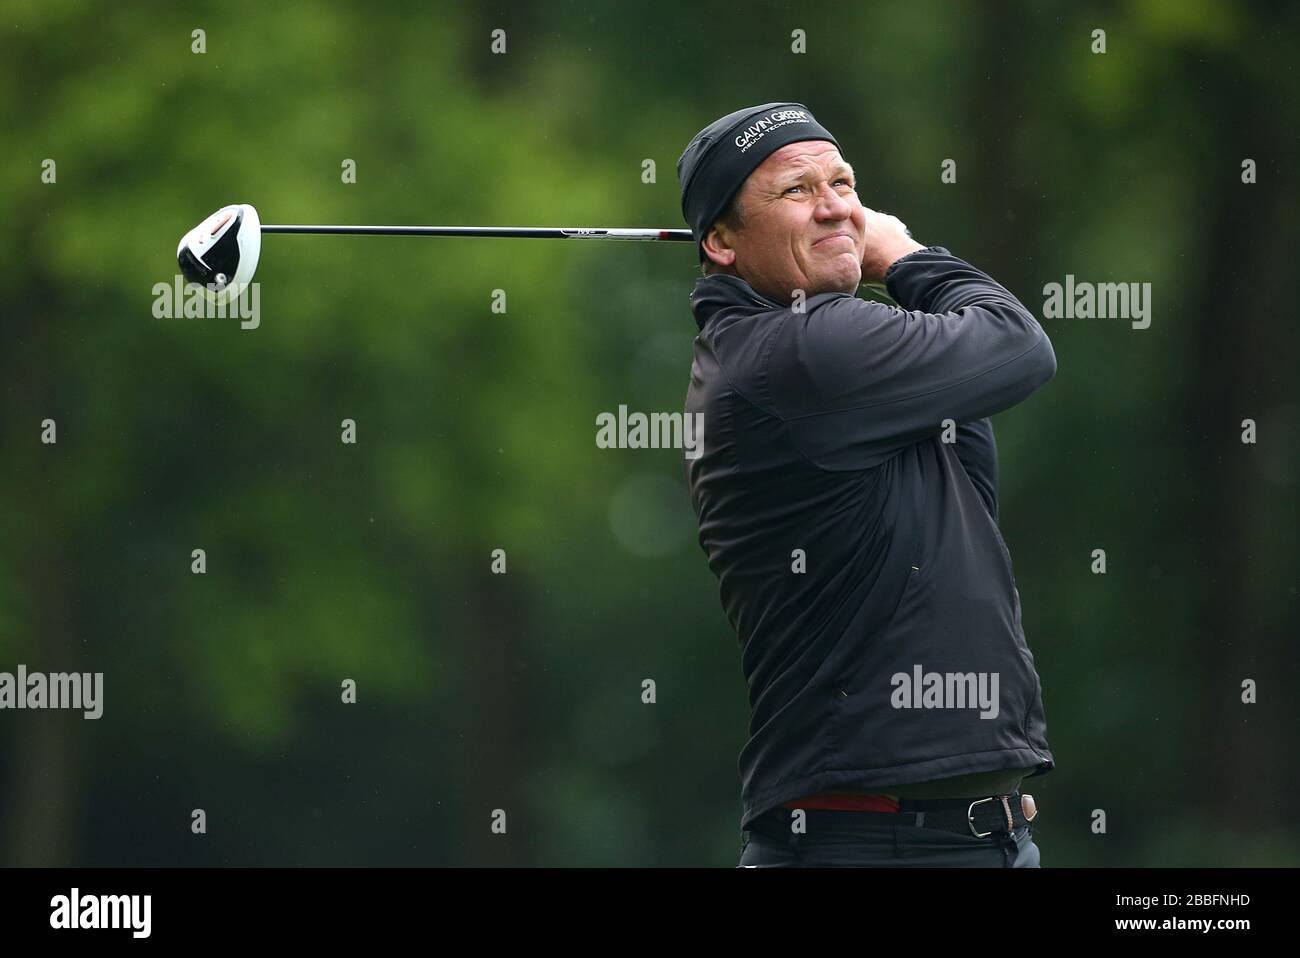 Jarmo Sandelin in Svezia durante il secondo giorno del campionato PGA BMW 2013, presso il Wentworth Golf Club. Foto Stock